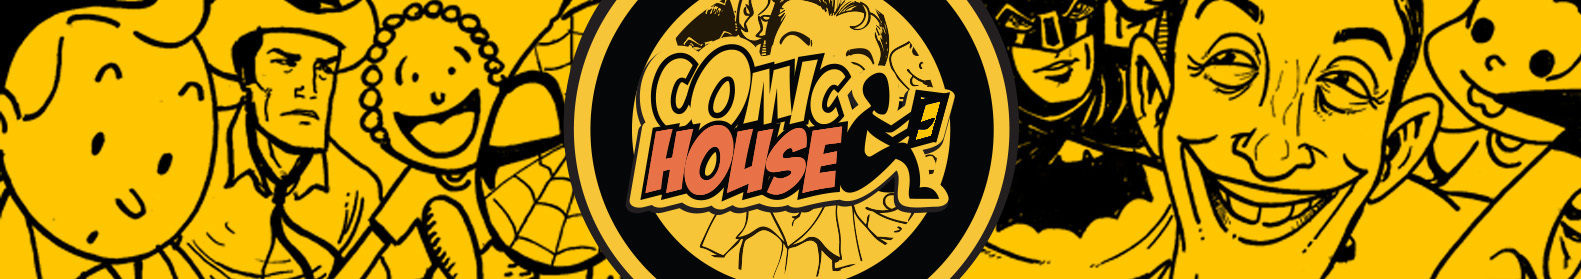 Comic House - Aqui você encontra os quadrinhos que não estão no gibi.